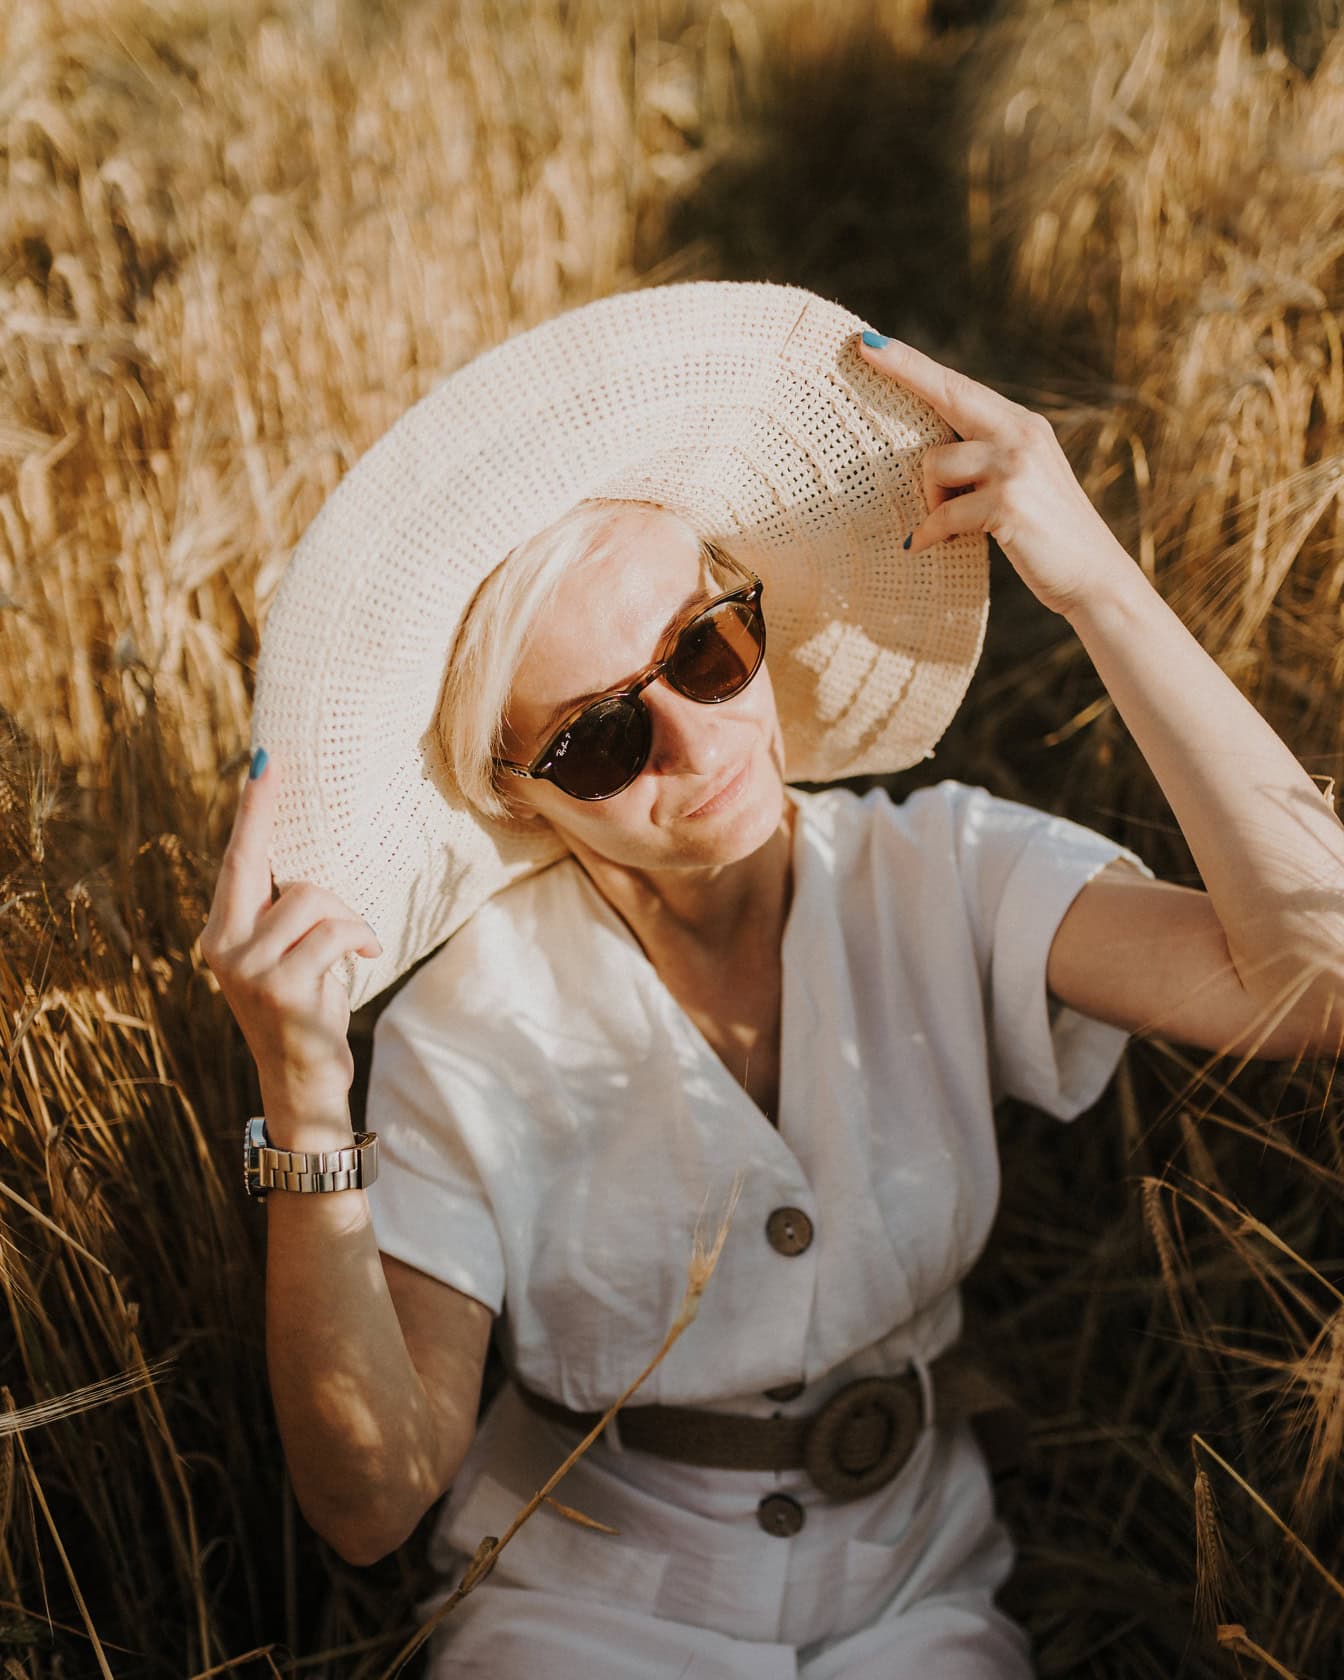 햇볕이 잘 드는 여름날 밀밭에 앉아 포즈를 취하는 모자와 선글라스를 쓴 금발 여자